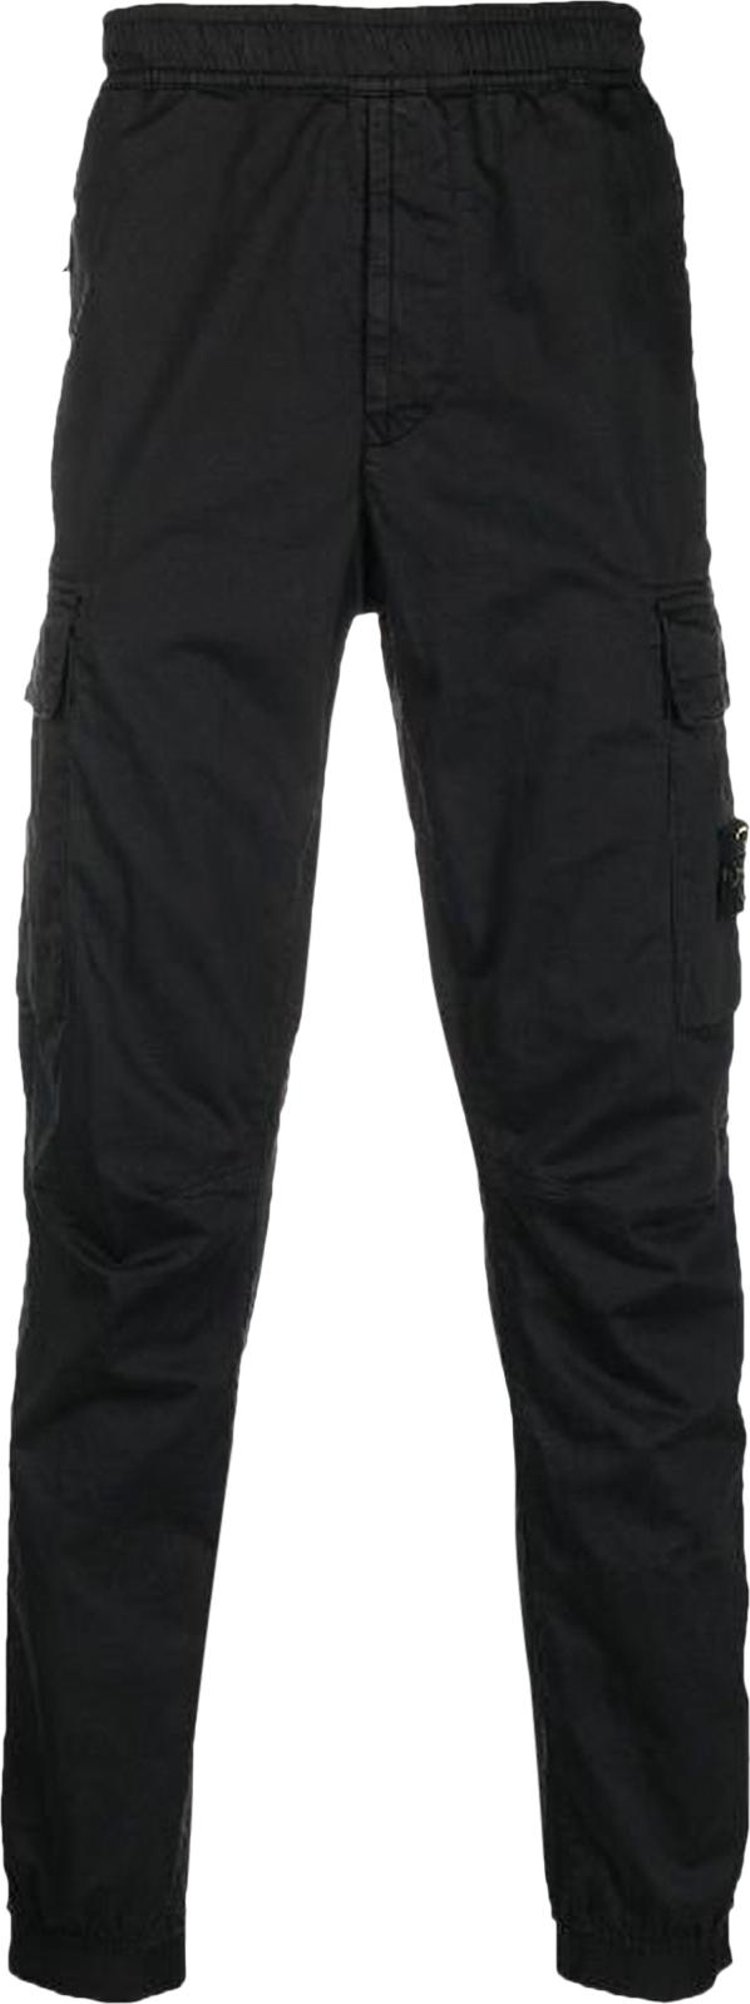 Buy Stone Island Basic Cargo Pants 'Black' - 771531314 V0029 | GOAT